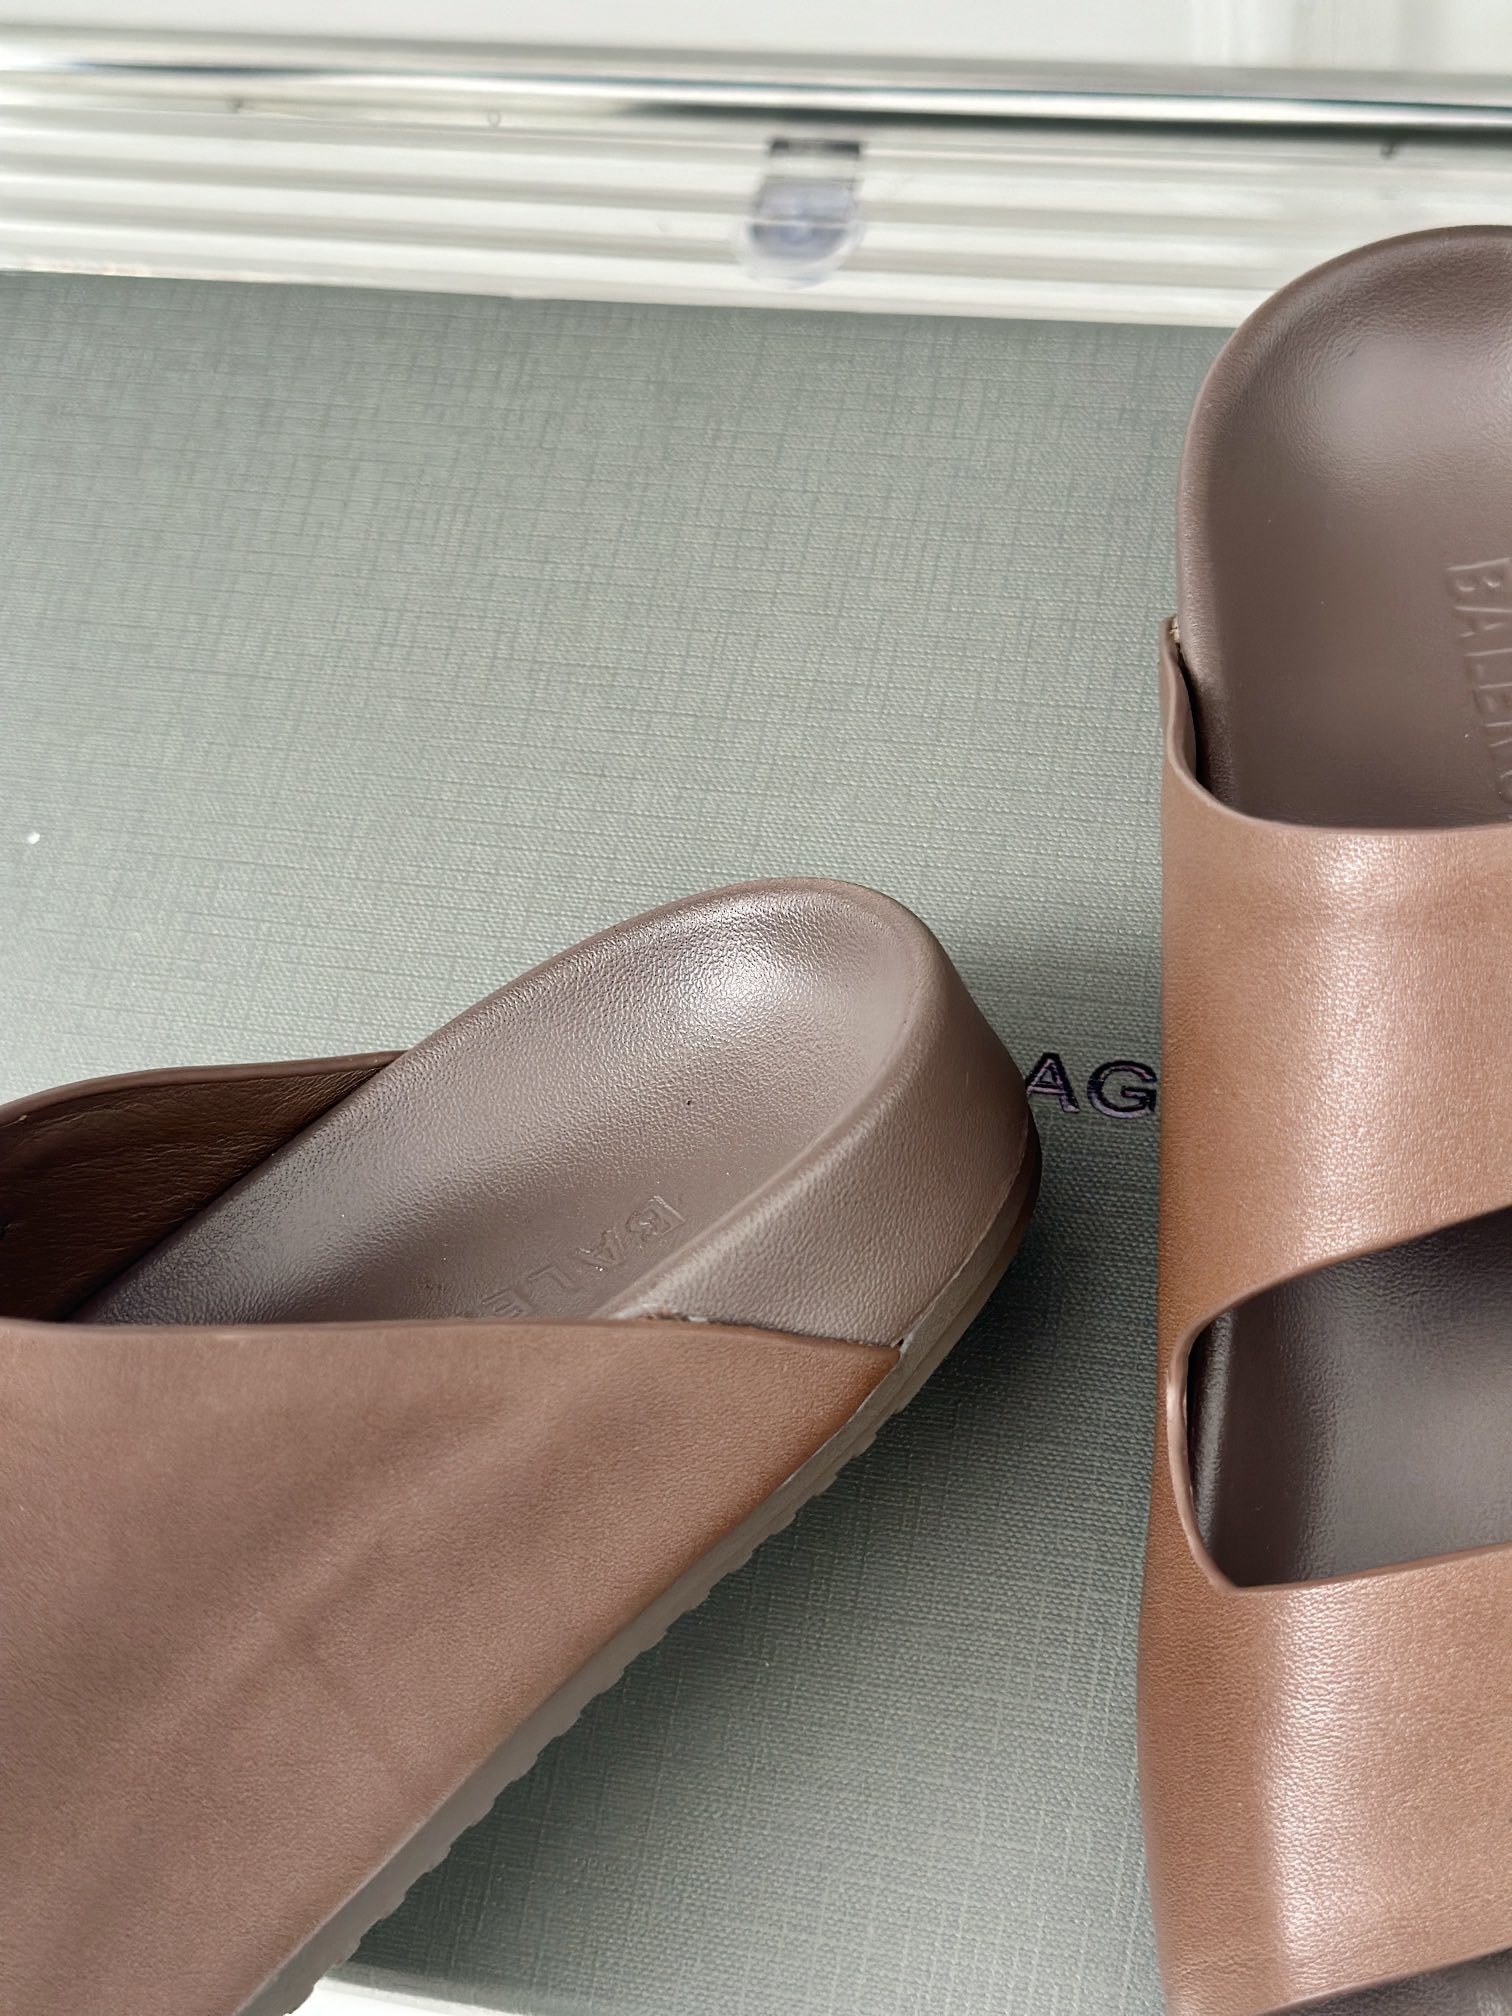 Balenciag*巴黎世家24s新品五趾造型两带拖鞋️将时髦发挥到极致巴黎的鞋子绝对开了挂因为真的每一